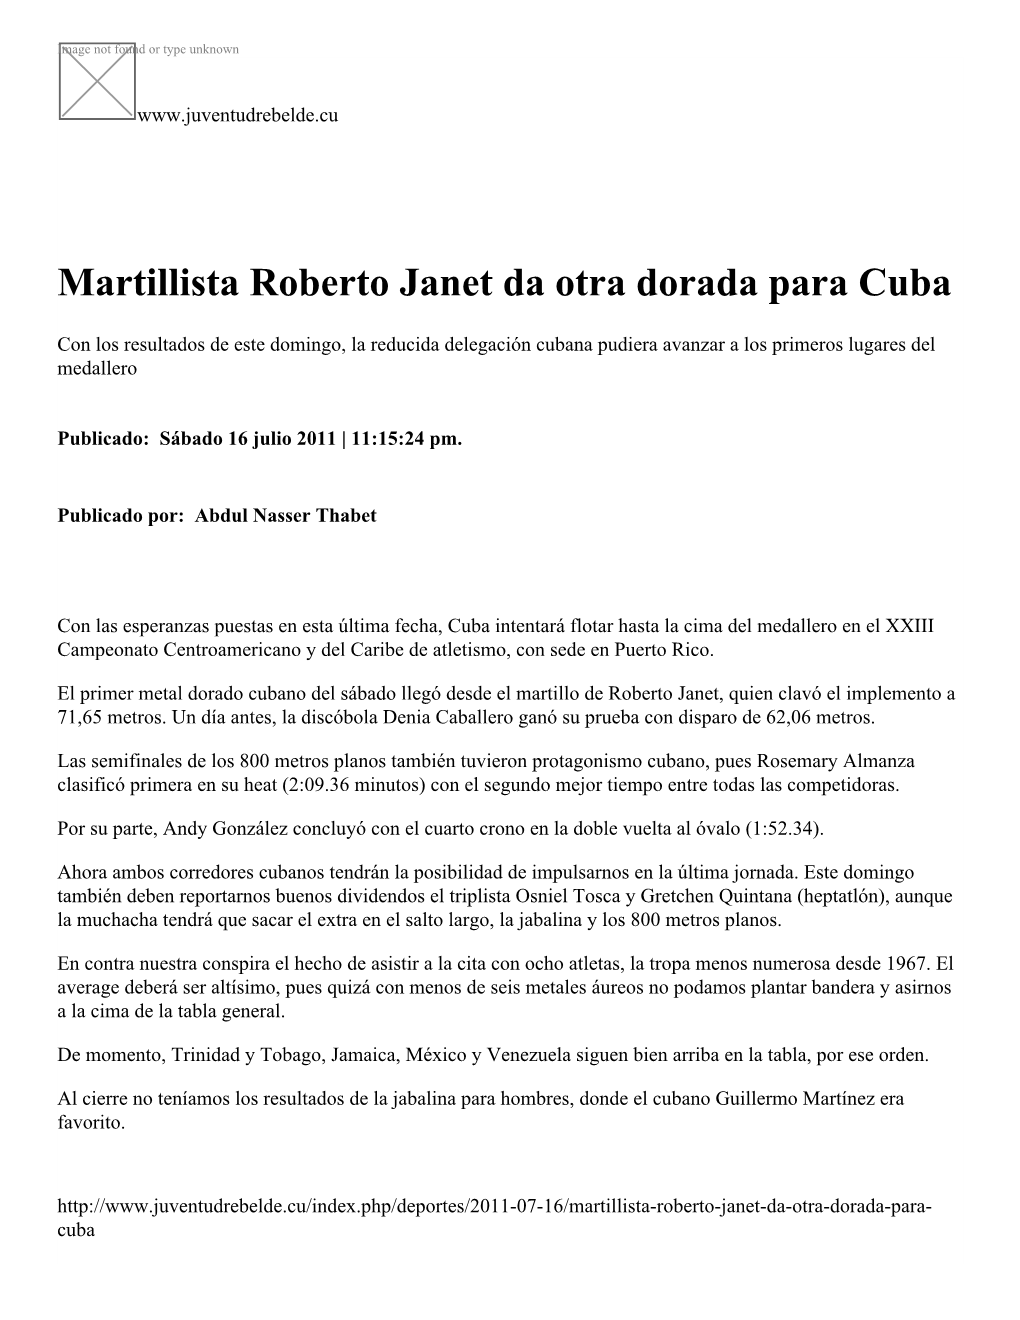 Martillista Roberto Janet Da Otra Dorada Para Cuba